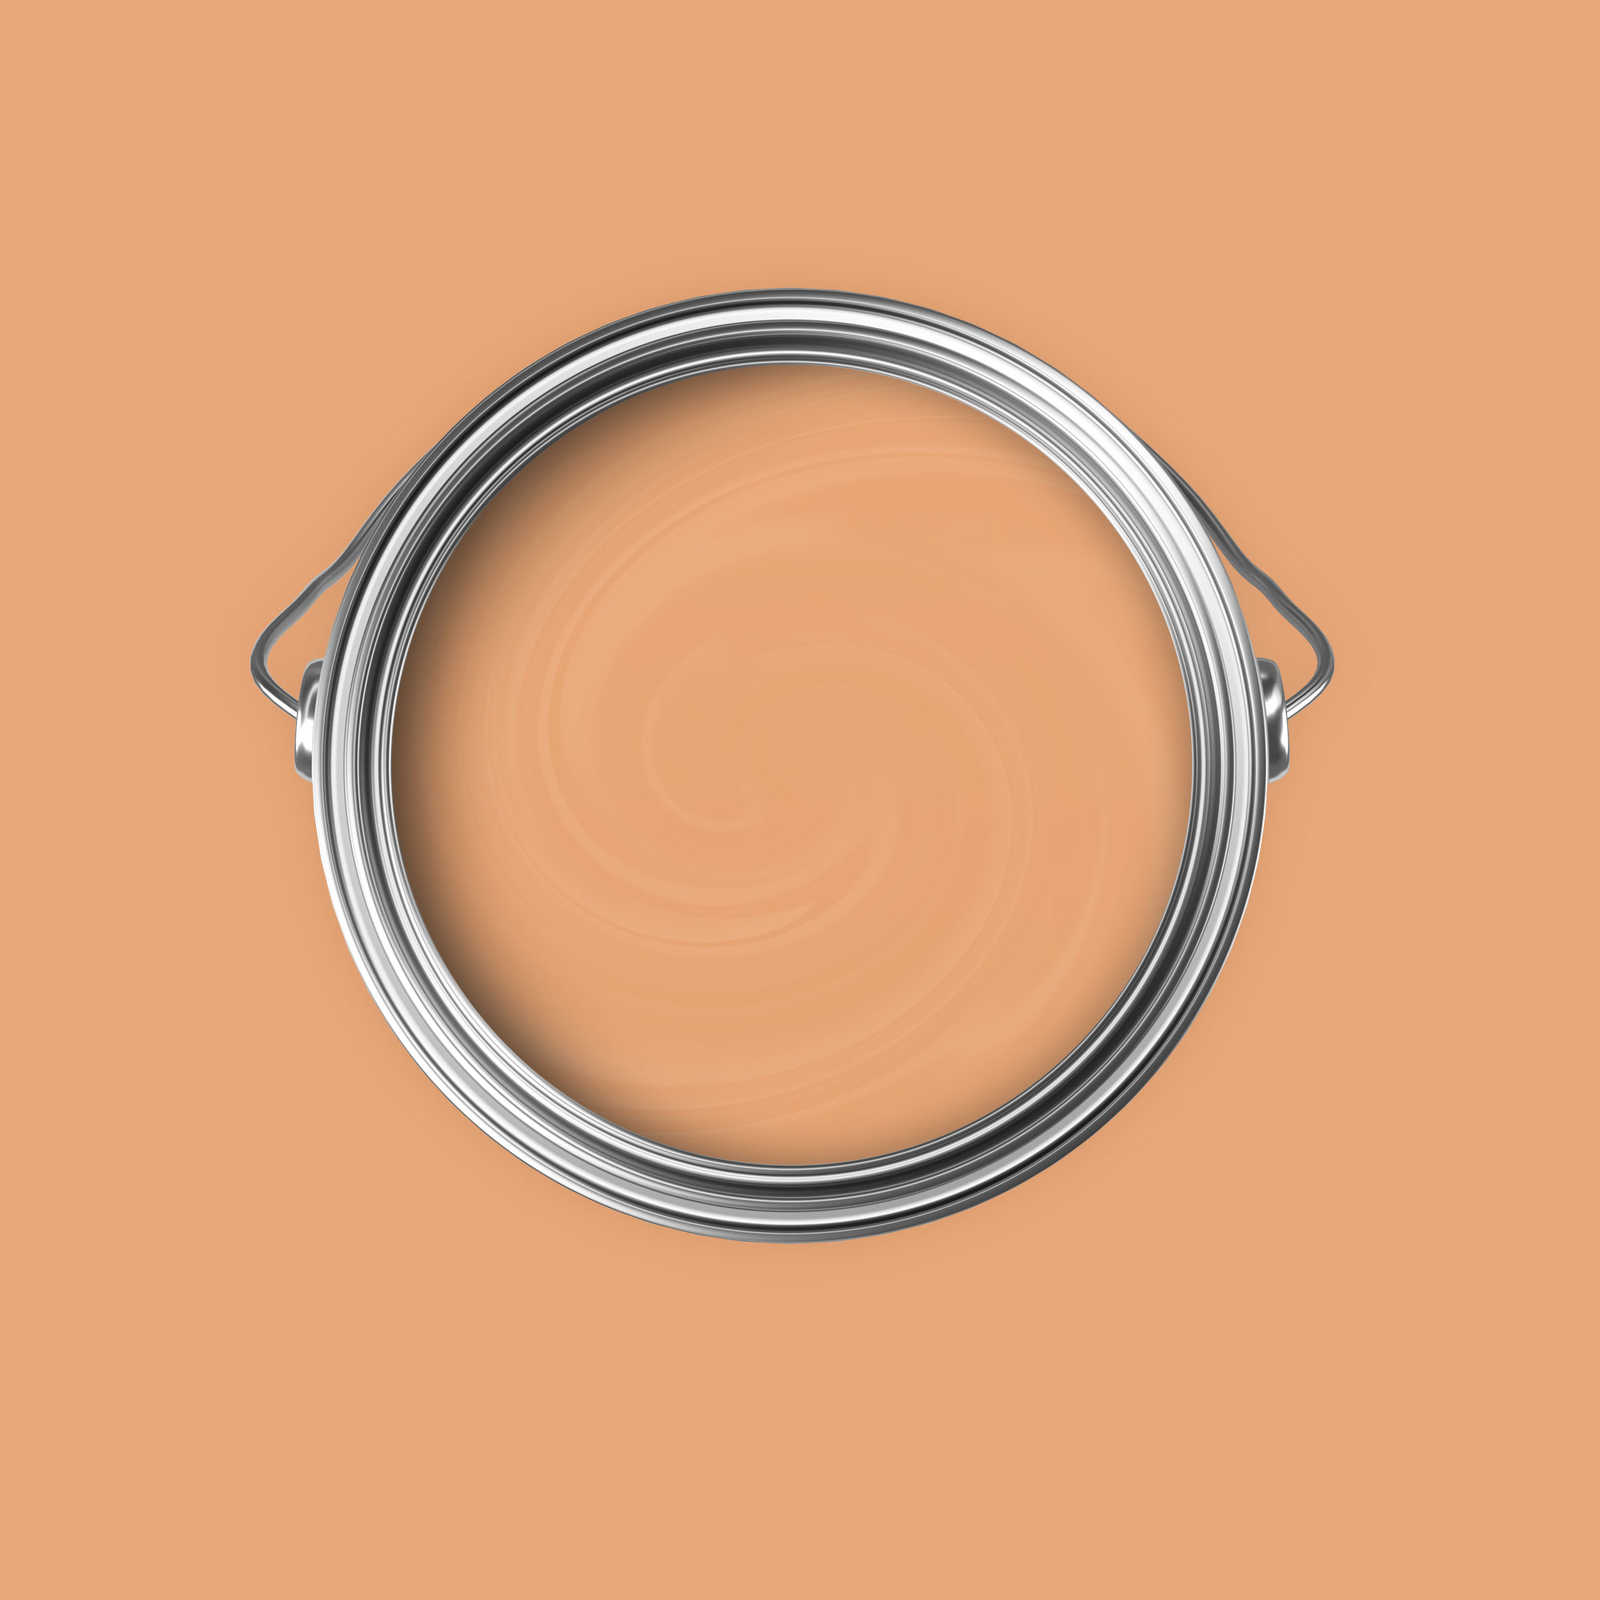             Premium Muurverf Awakening Apricot »Pretty Peach« NW901 – 5 liter
        